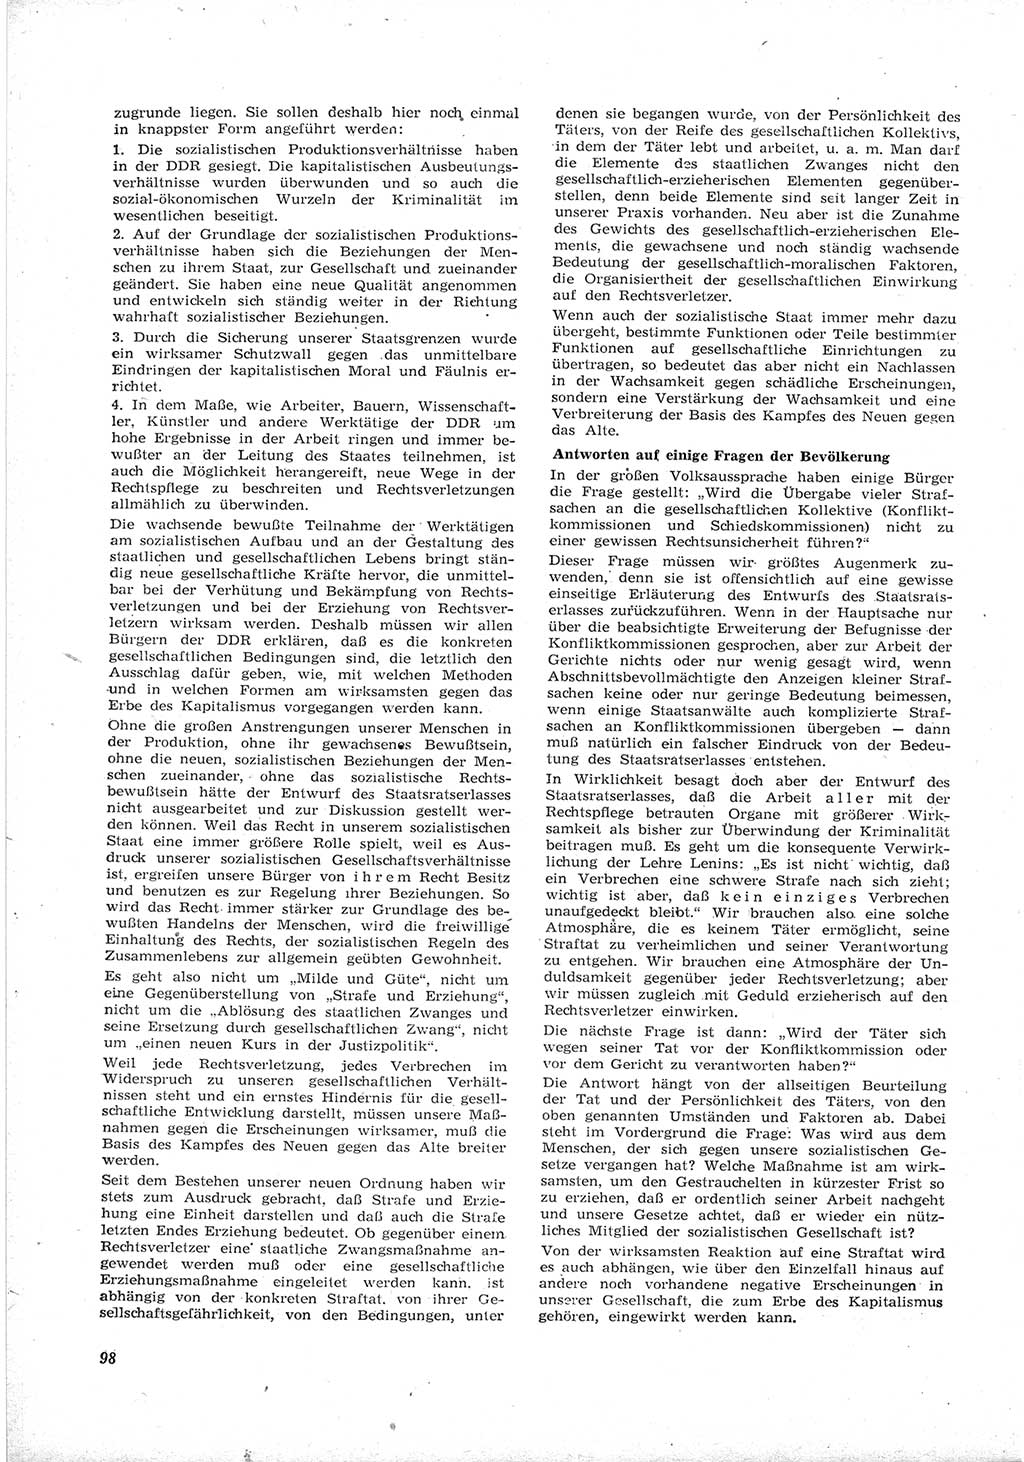 Neue Justiz (NJ), Zeitschrift für Recht und Rechtswissenschaft [Deutsche Demokratische Republik (DDR)], 17. Jahrgang 1963, Seite 98 (NJ DDR 1963, S. 98)